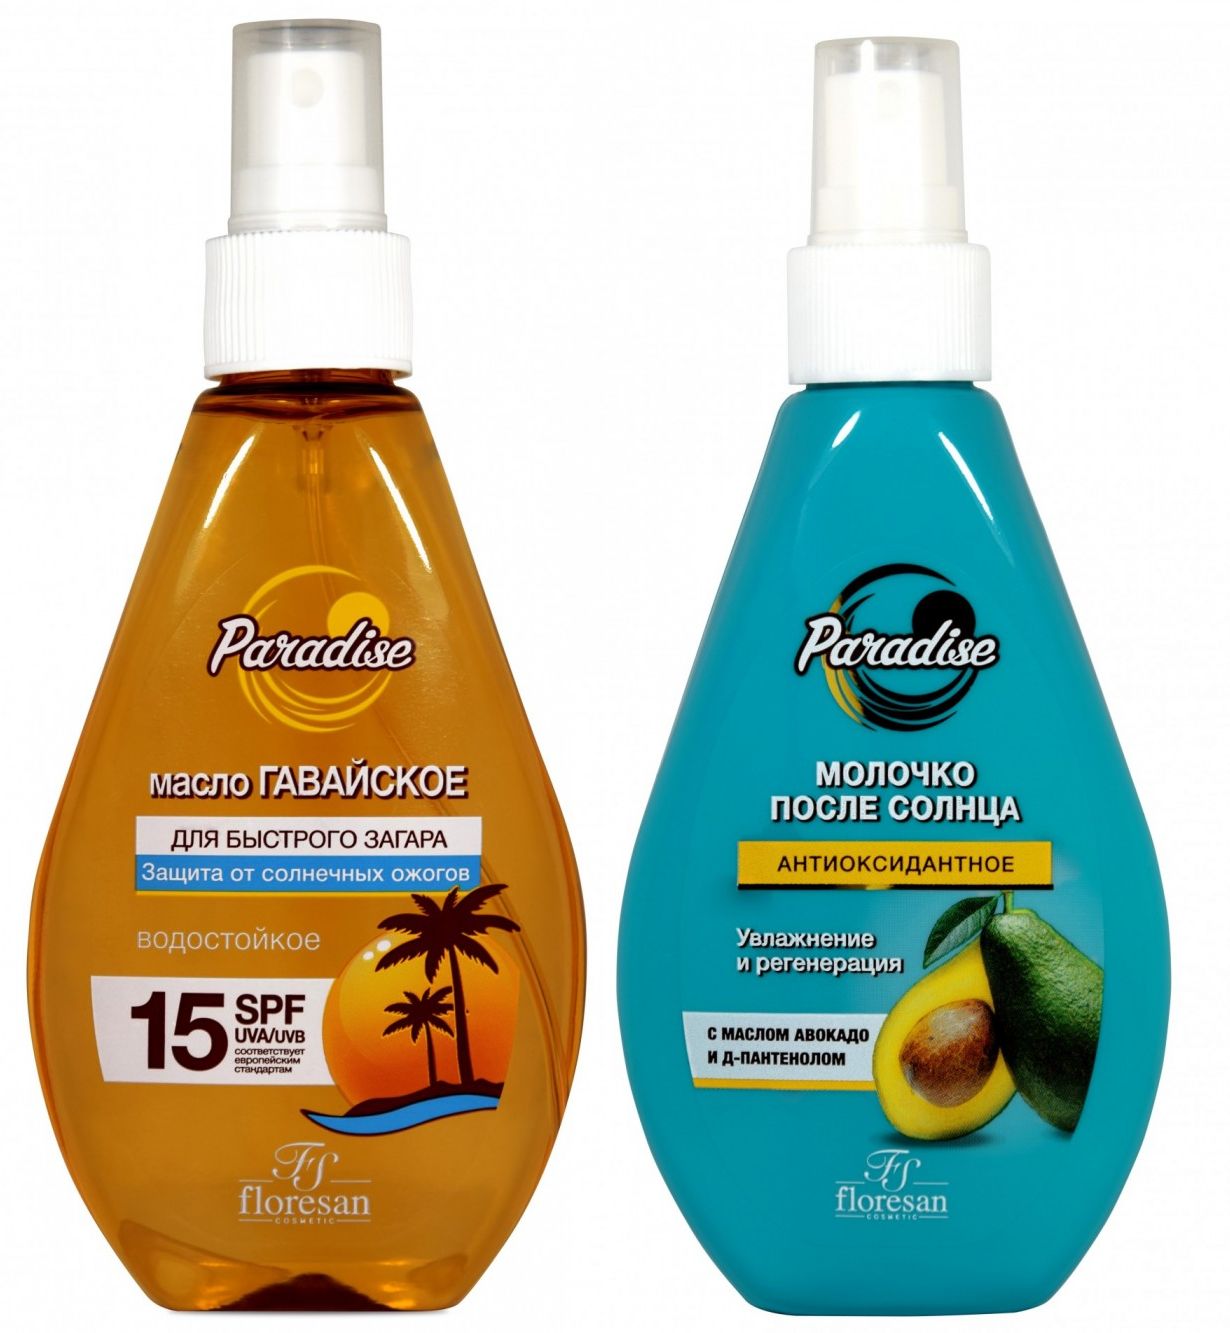 Набор Floresan Paradise масло для быстрого загара SPF15 и молочко после солнца 160 млх2 шт